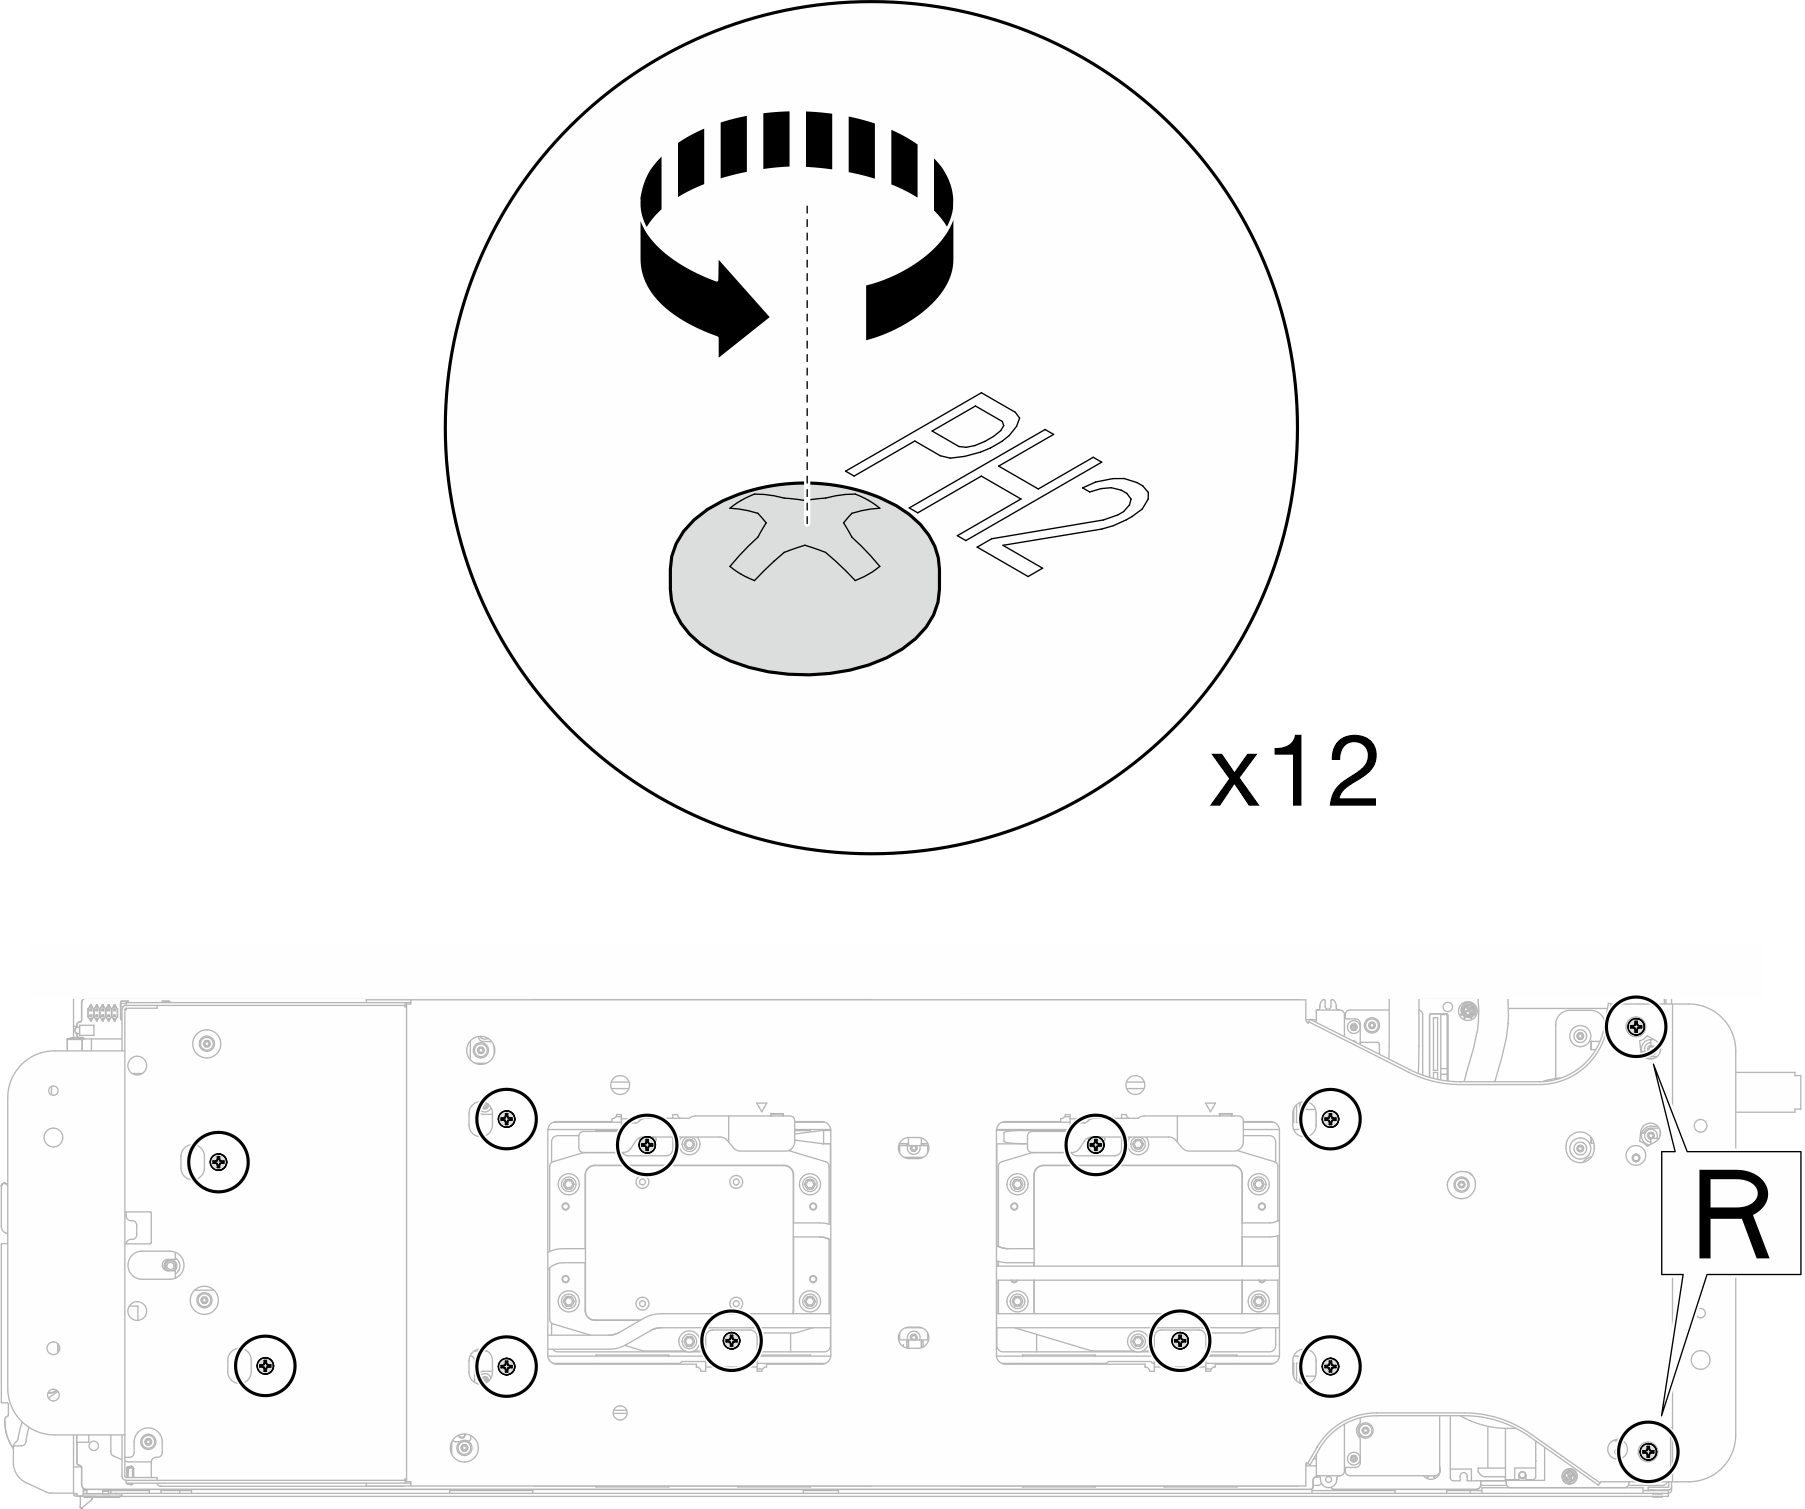 Water loop carrier screws installation (Compute node)